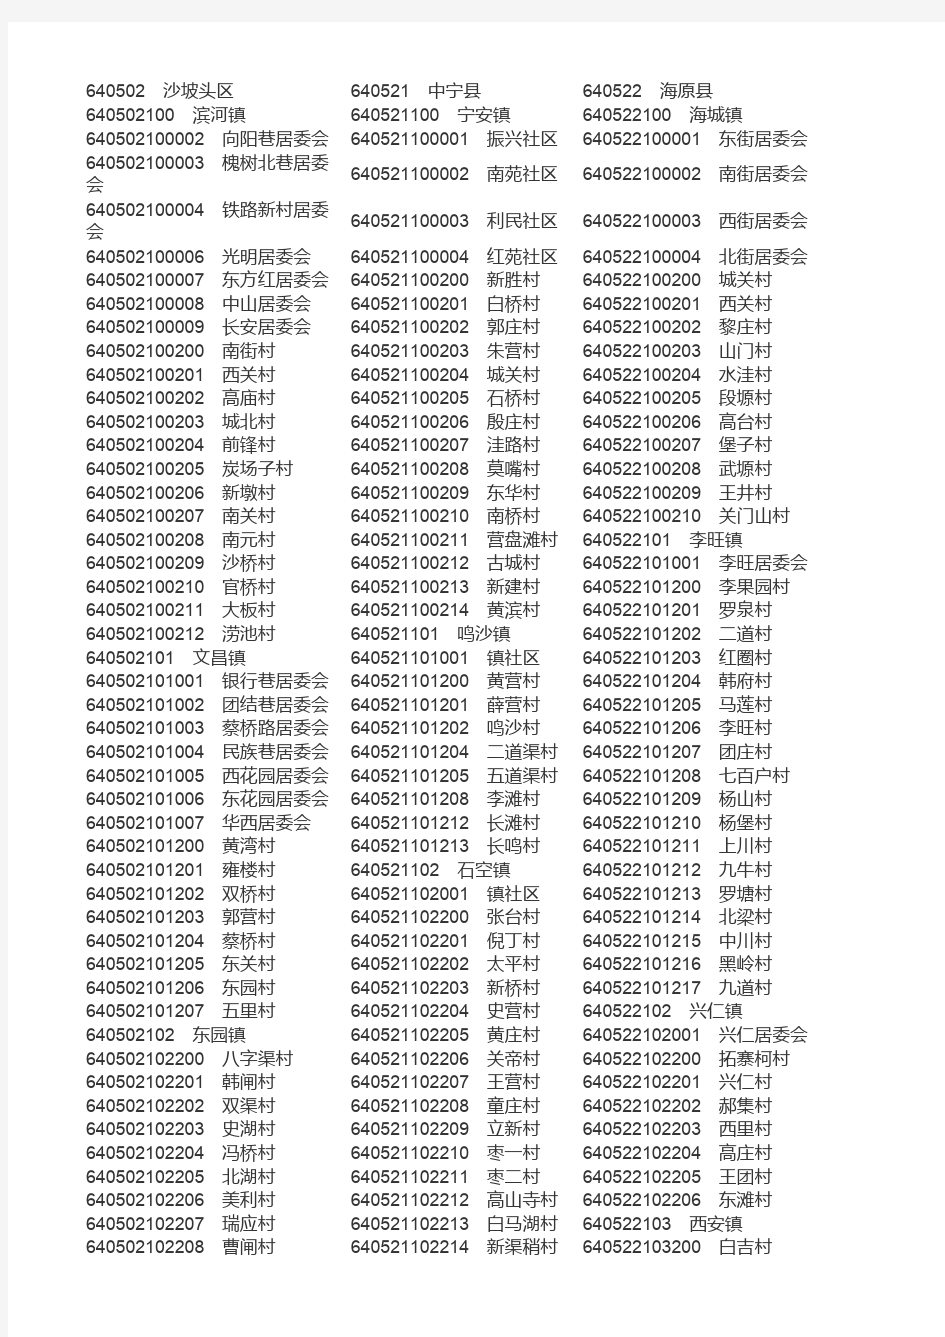 宁夏行政区划代码表-行政区划网整理